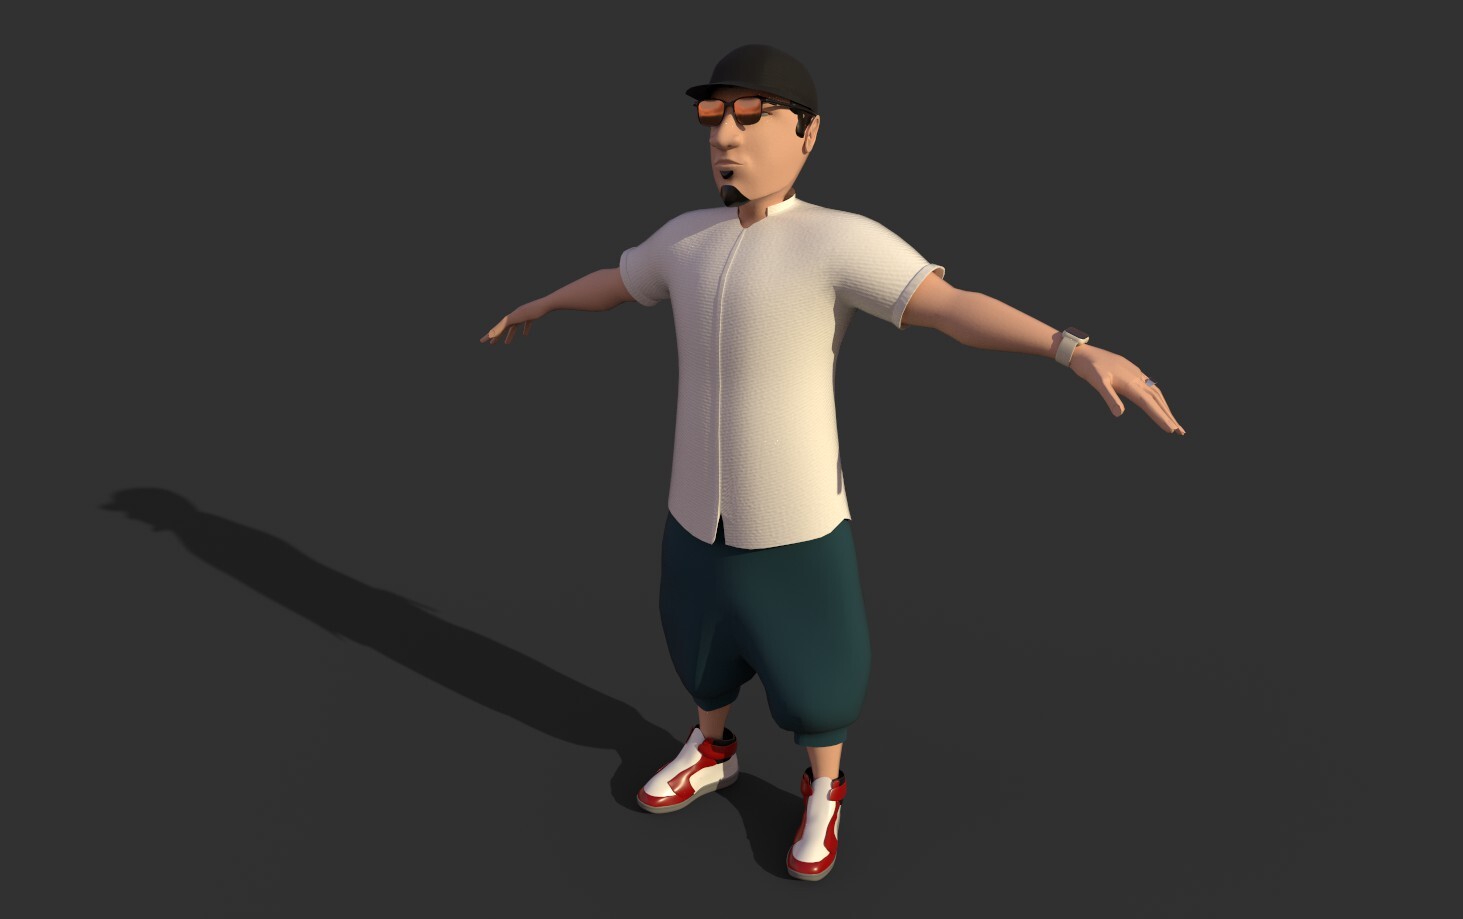 ArtStation - 3D character model